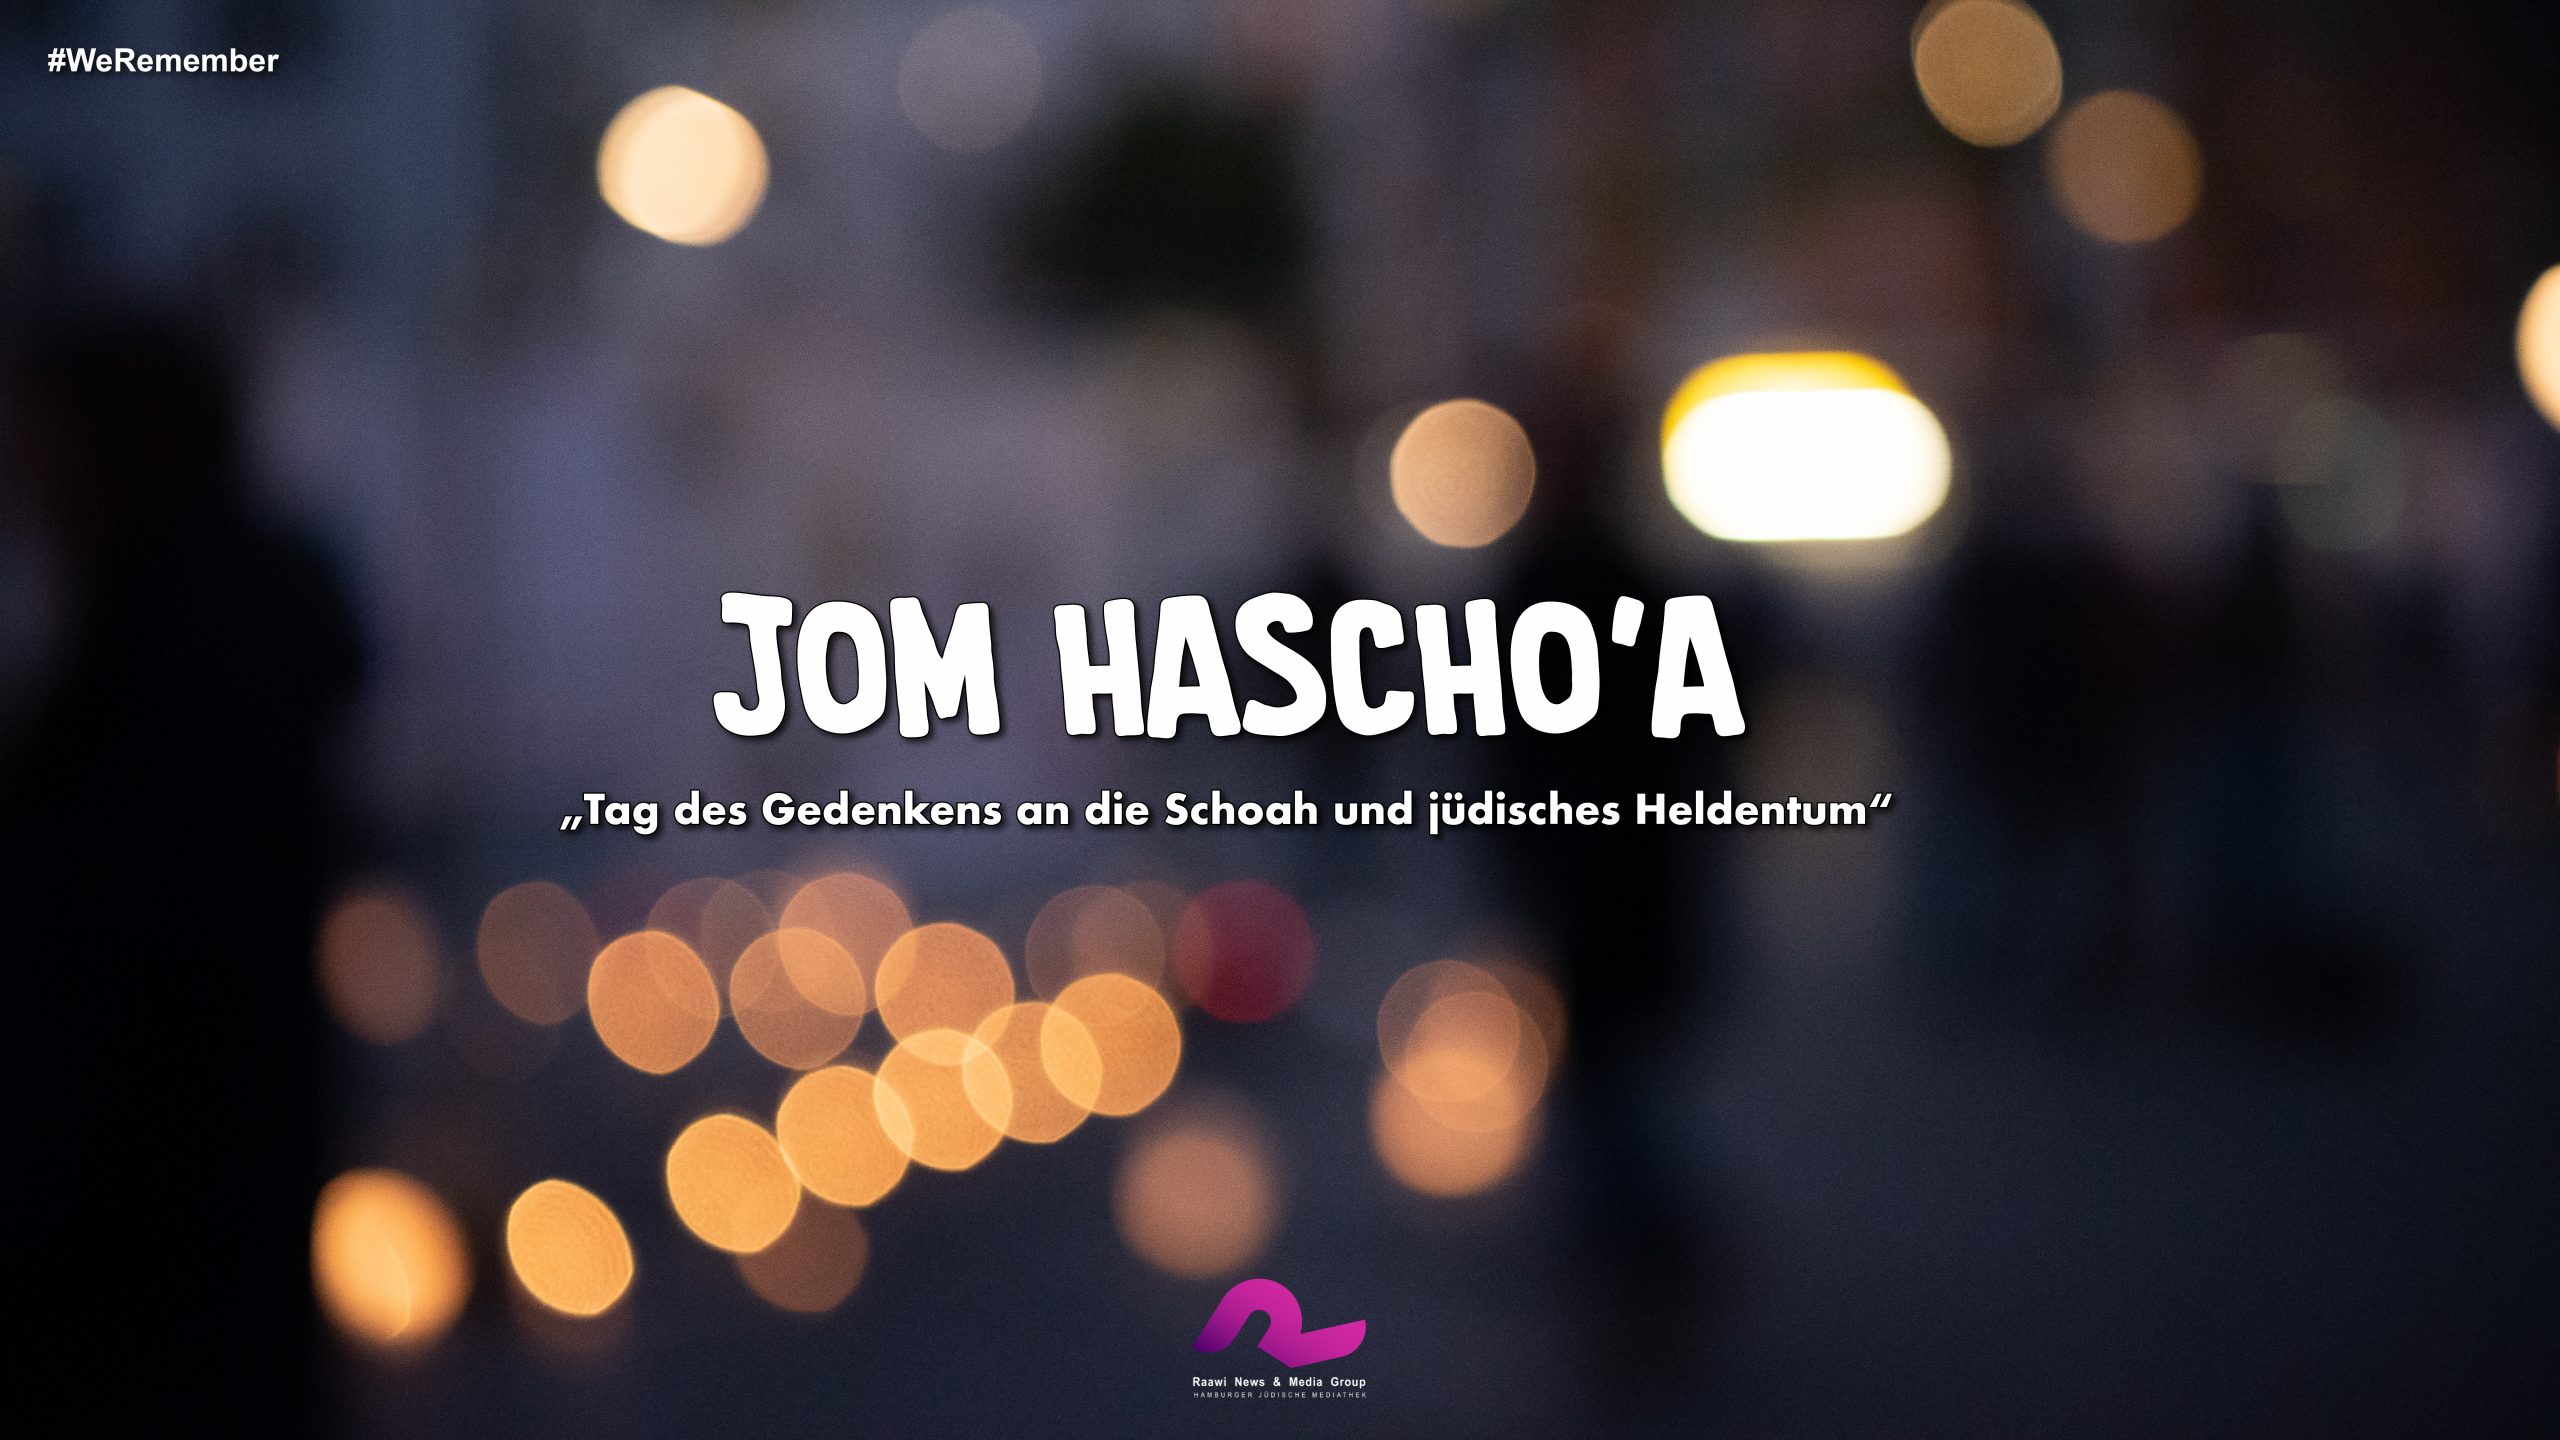 #WeRemember: Jom haScho’a